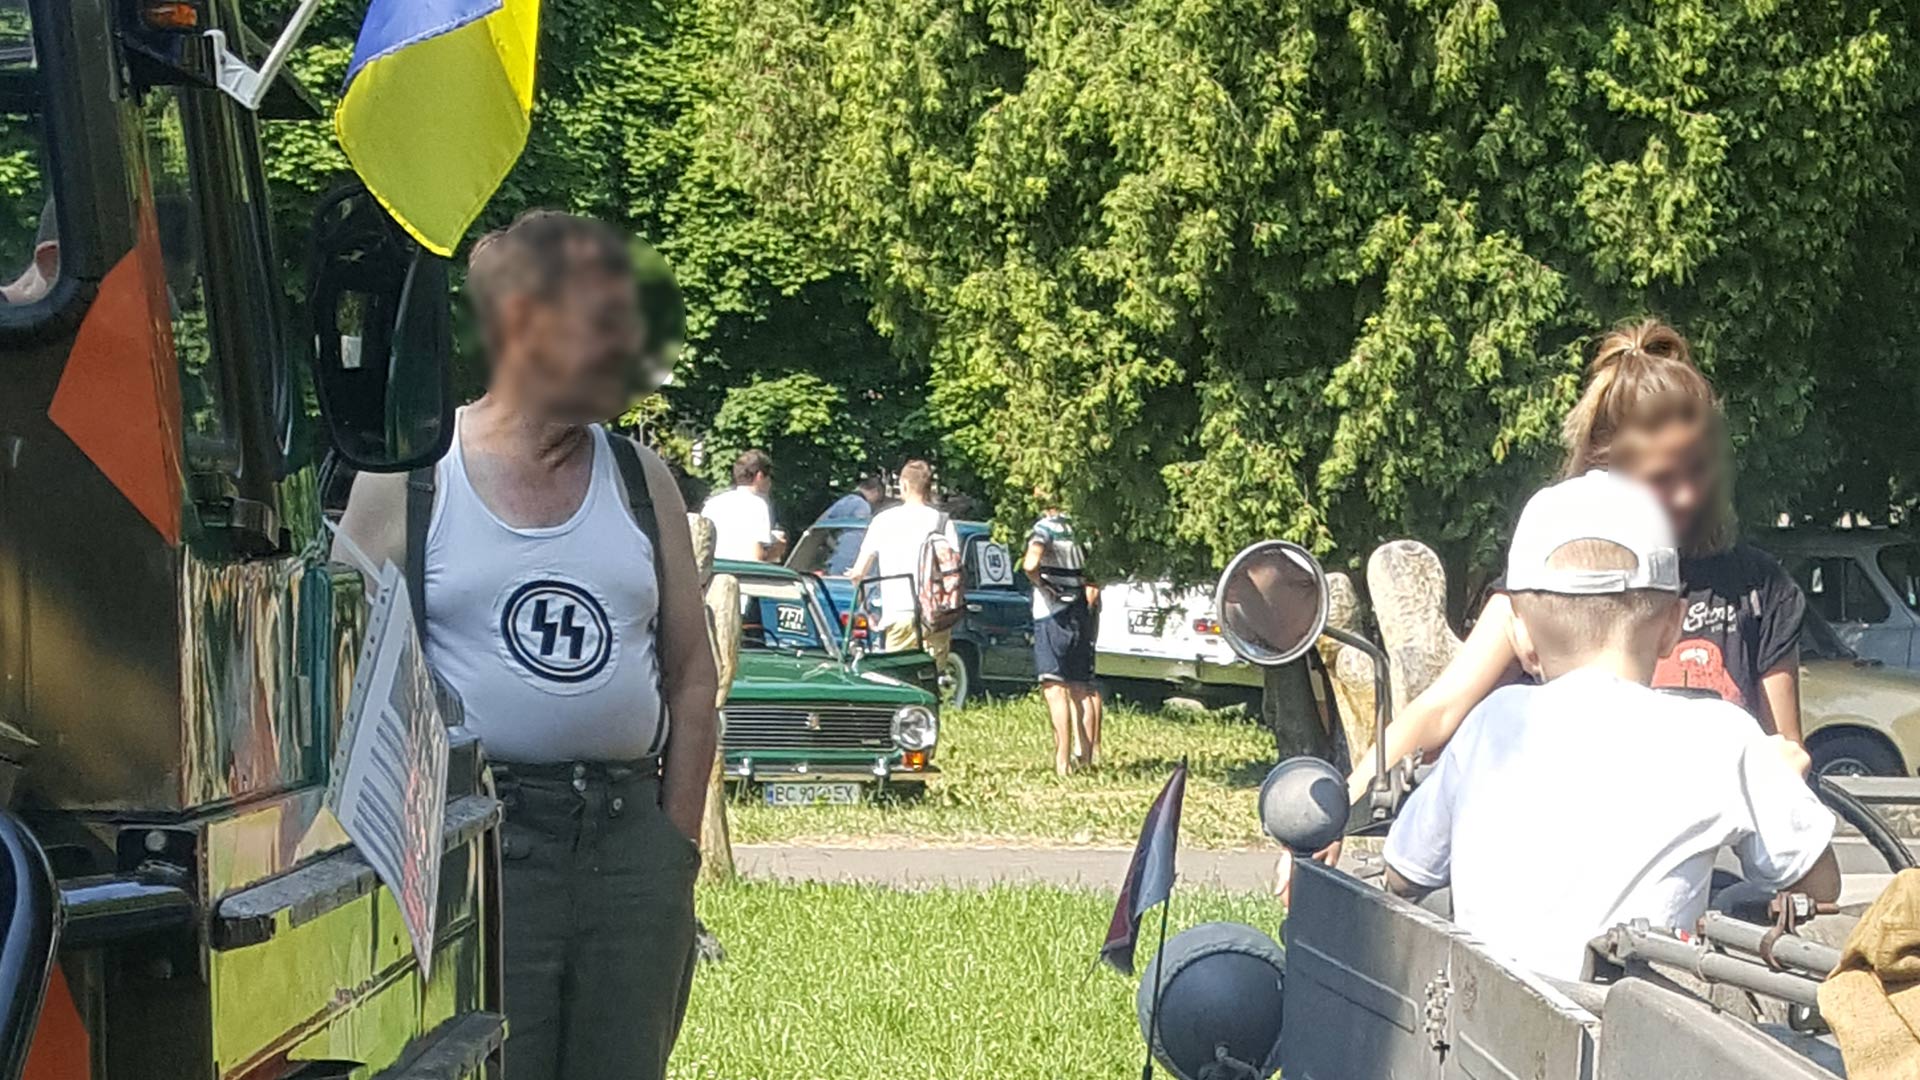 Nazistowskie emblematy we Lwowie